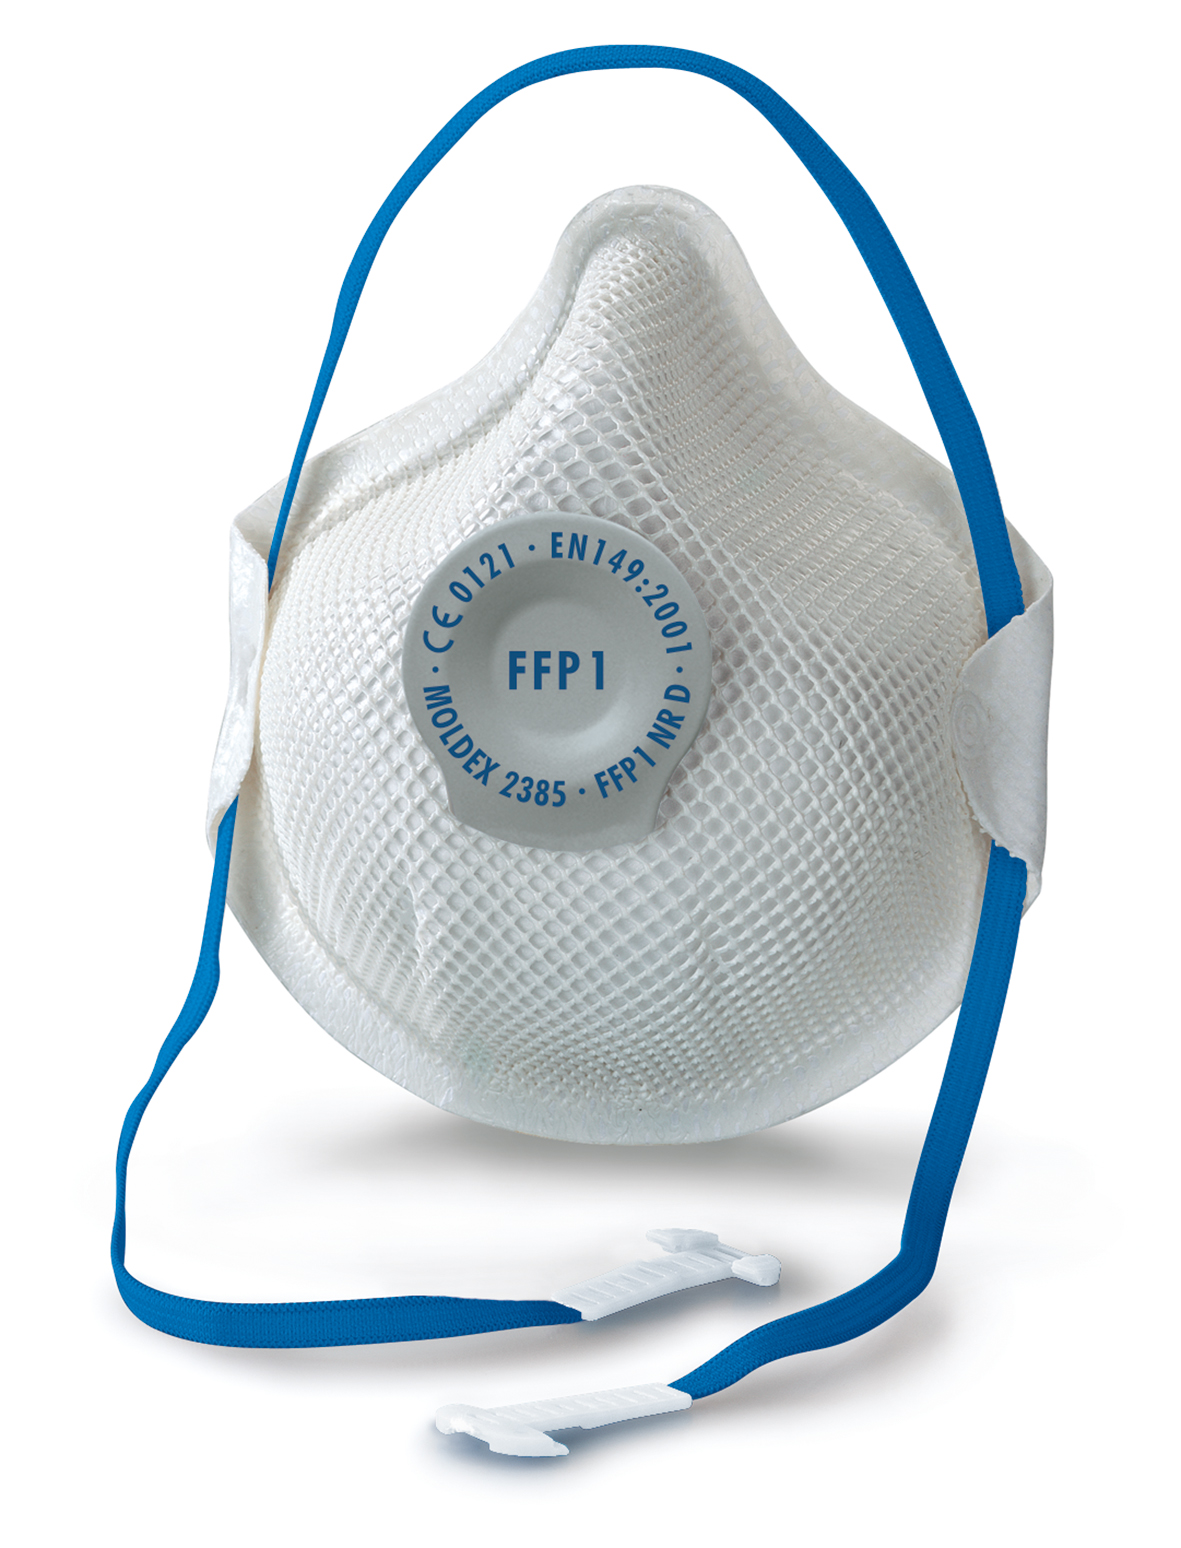 Atemschutzmaske  - FFP1 NR D mit Klimaventil - Smart 2385